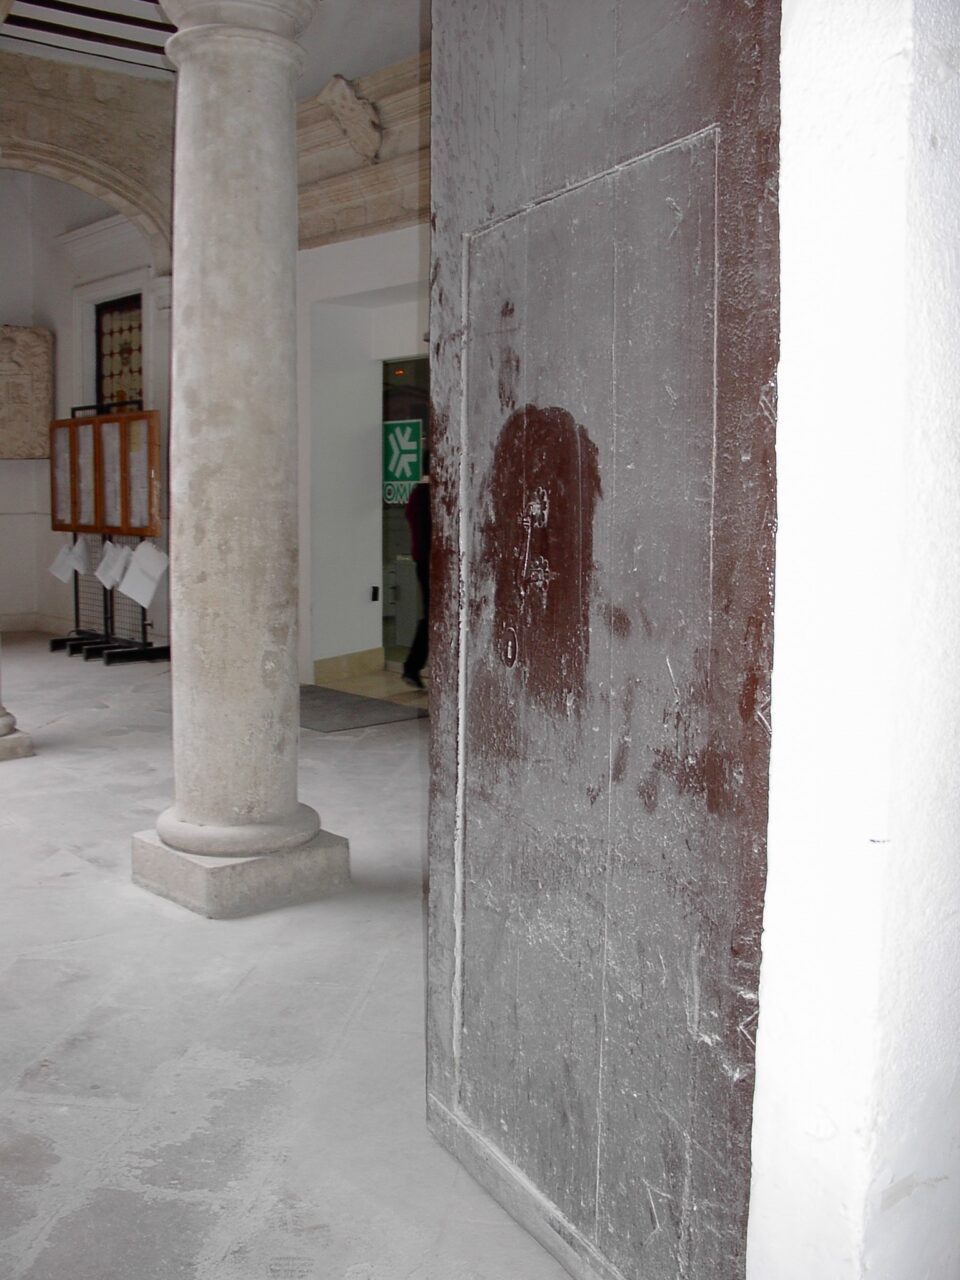 VILLENA. VÍDEO - Roban dos piezas de la puerta del consistorio que datan del siglo XVI